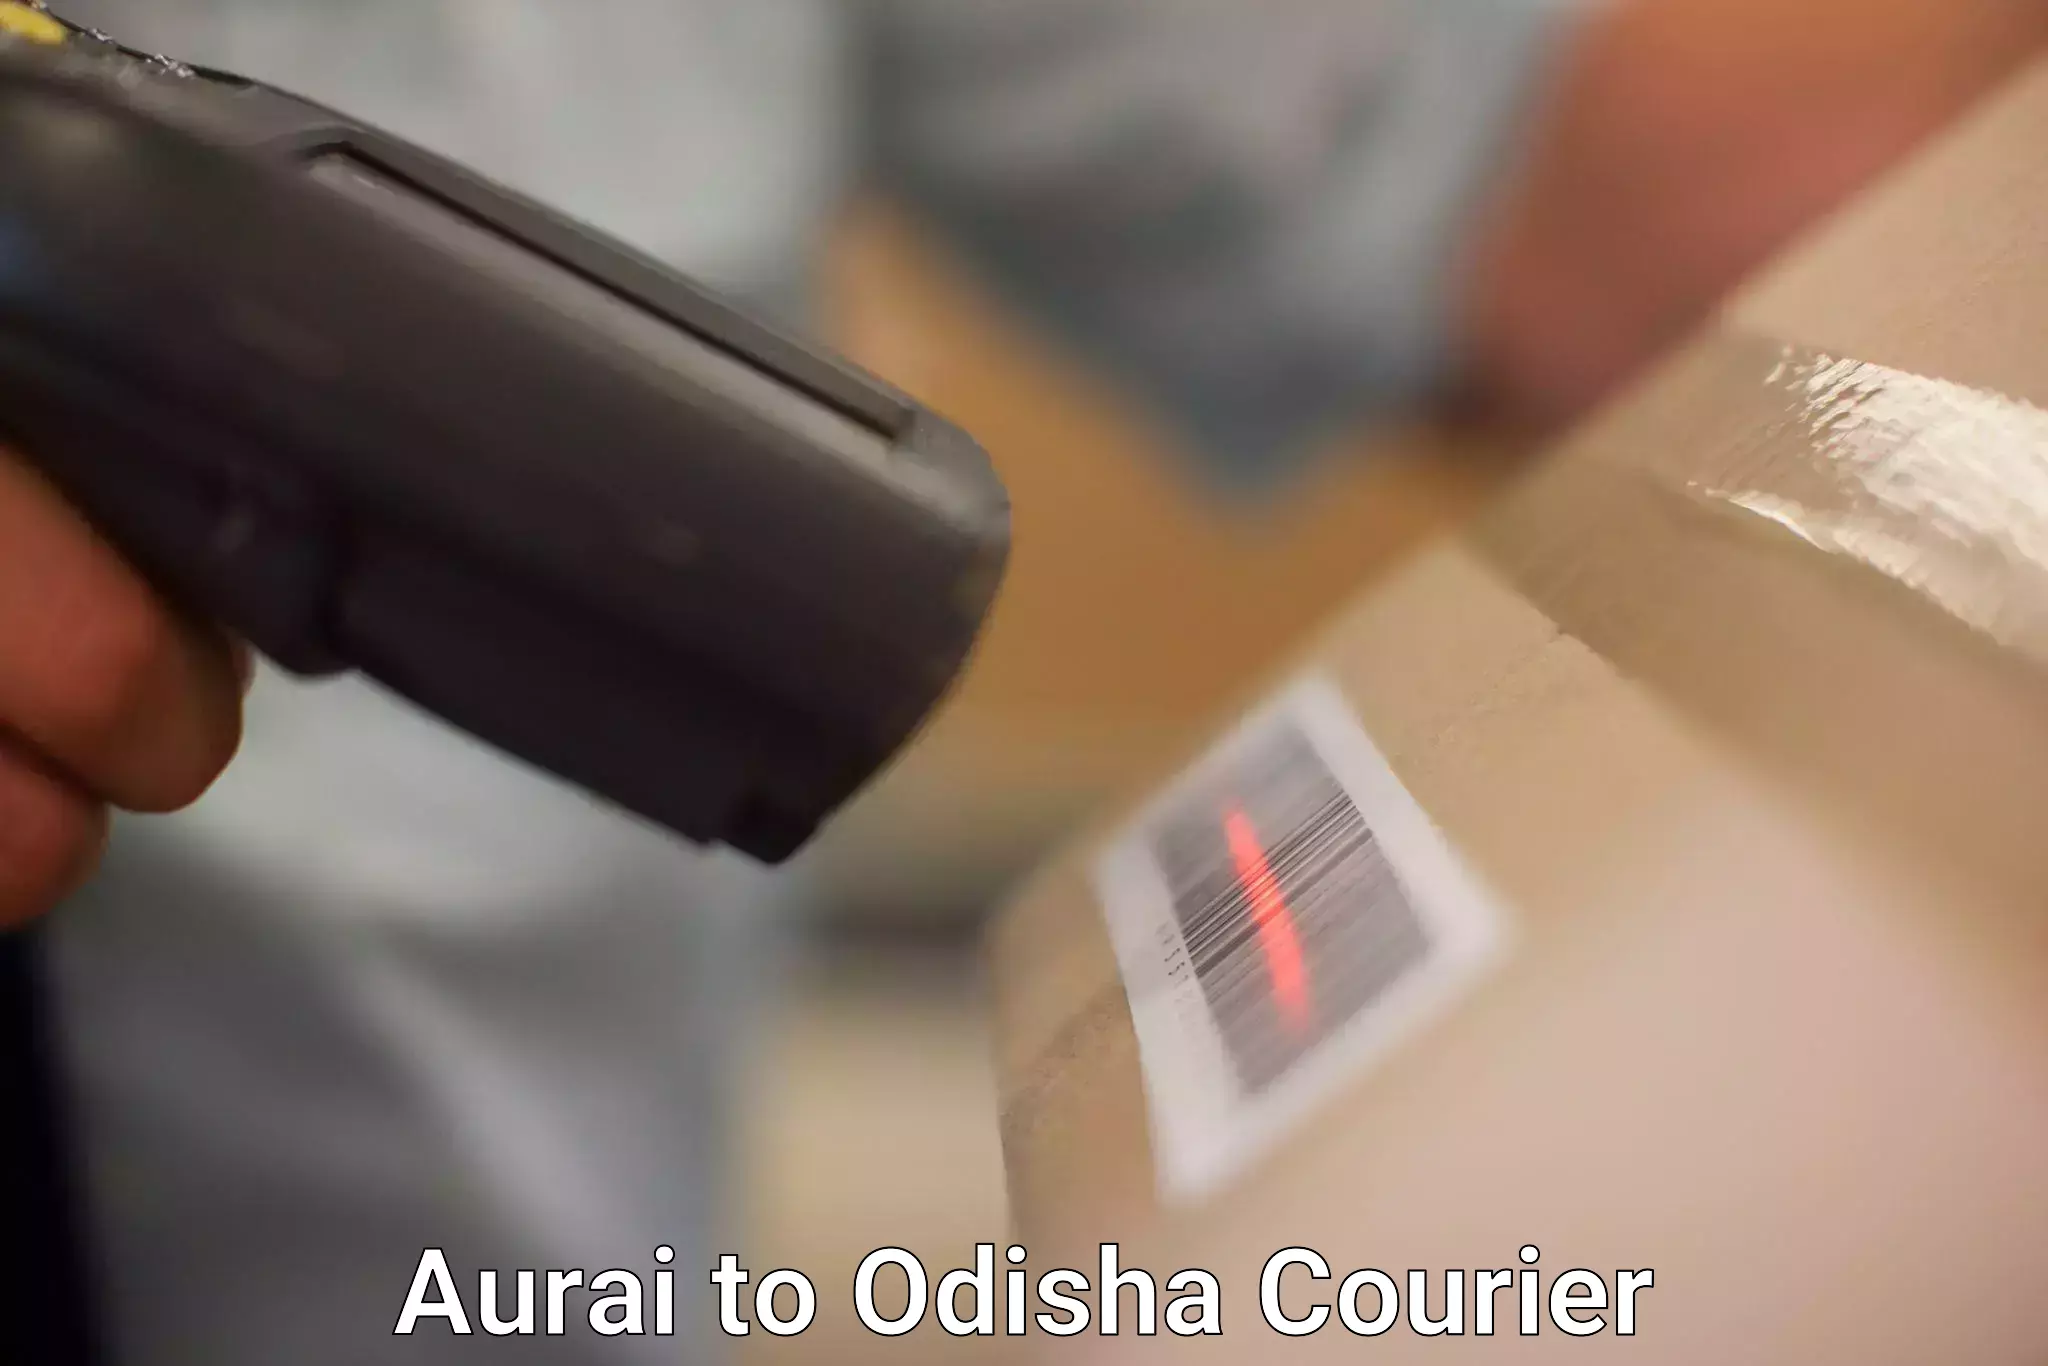 Pharmaceutical courier Aurai to Kesinga